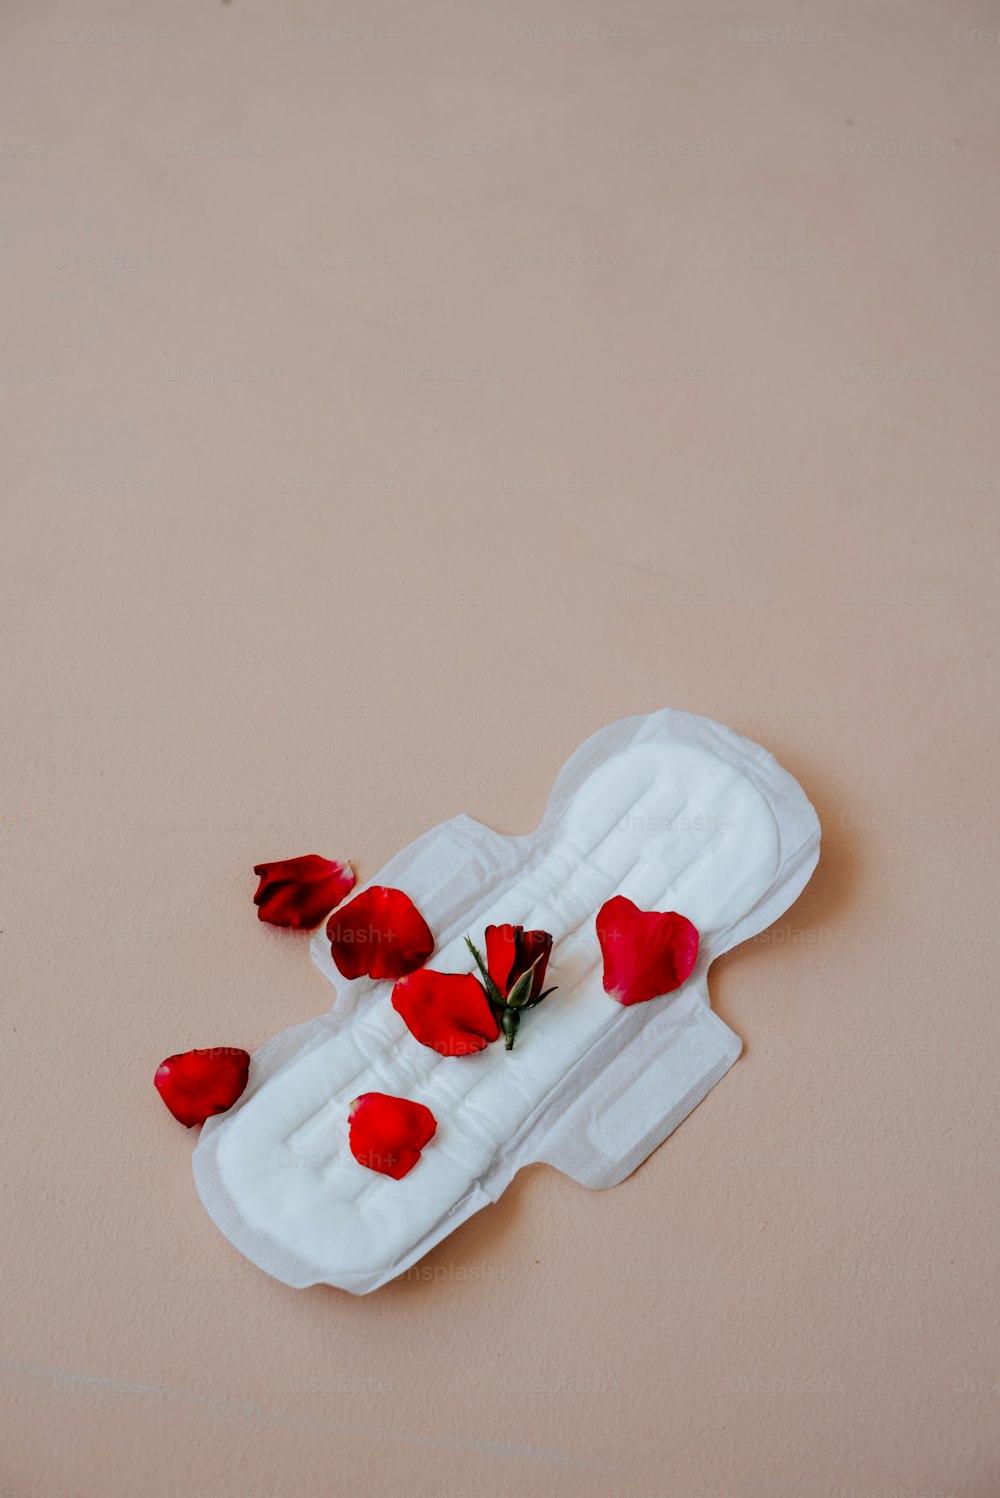 ein weißes Objekt mit roten Blumen darauf